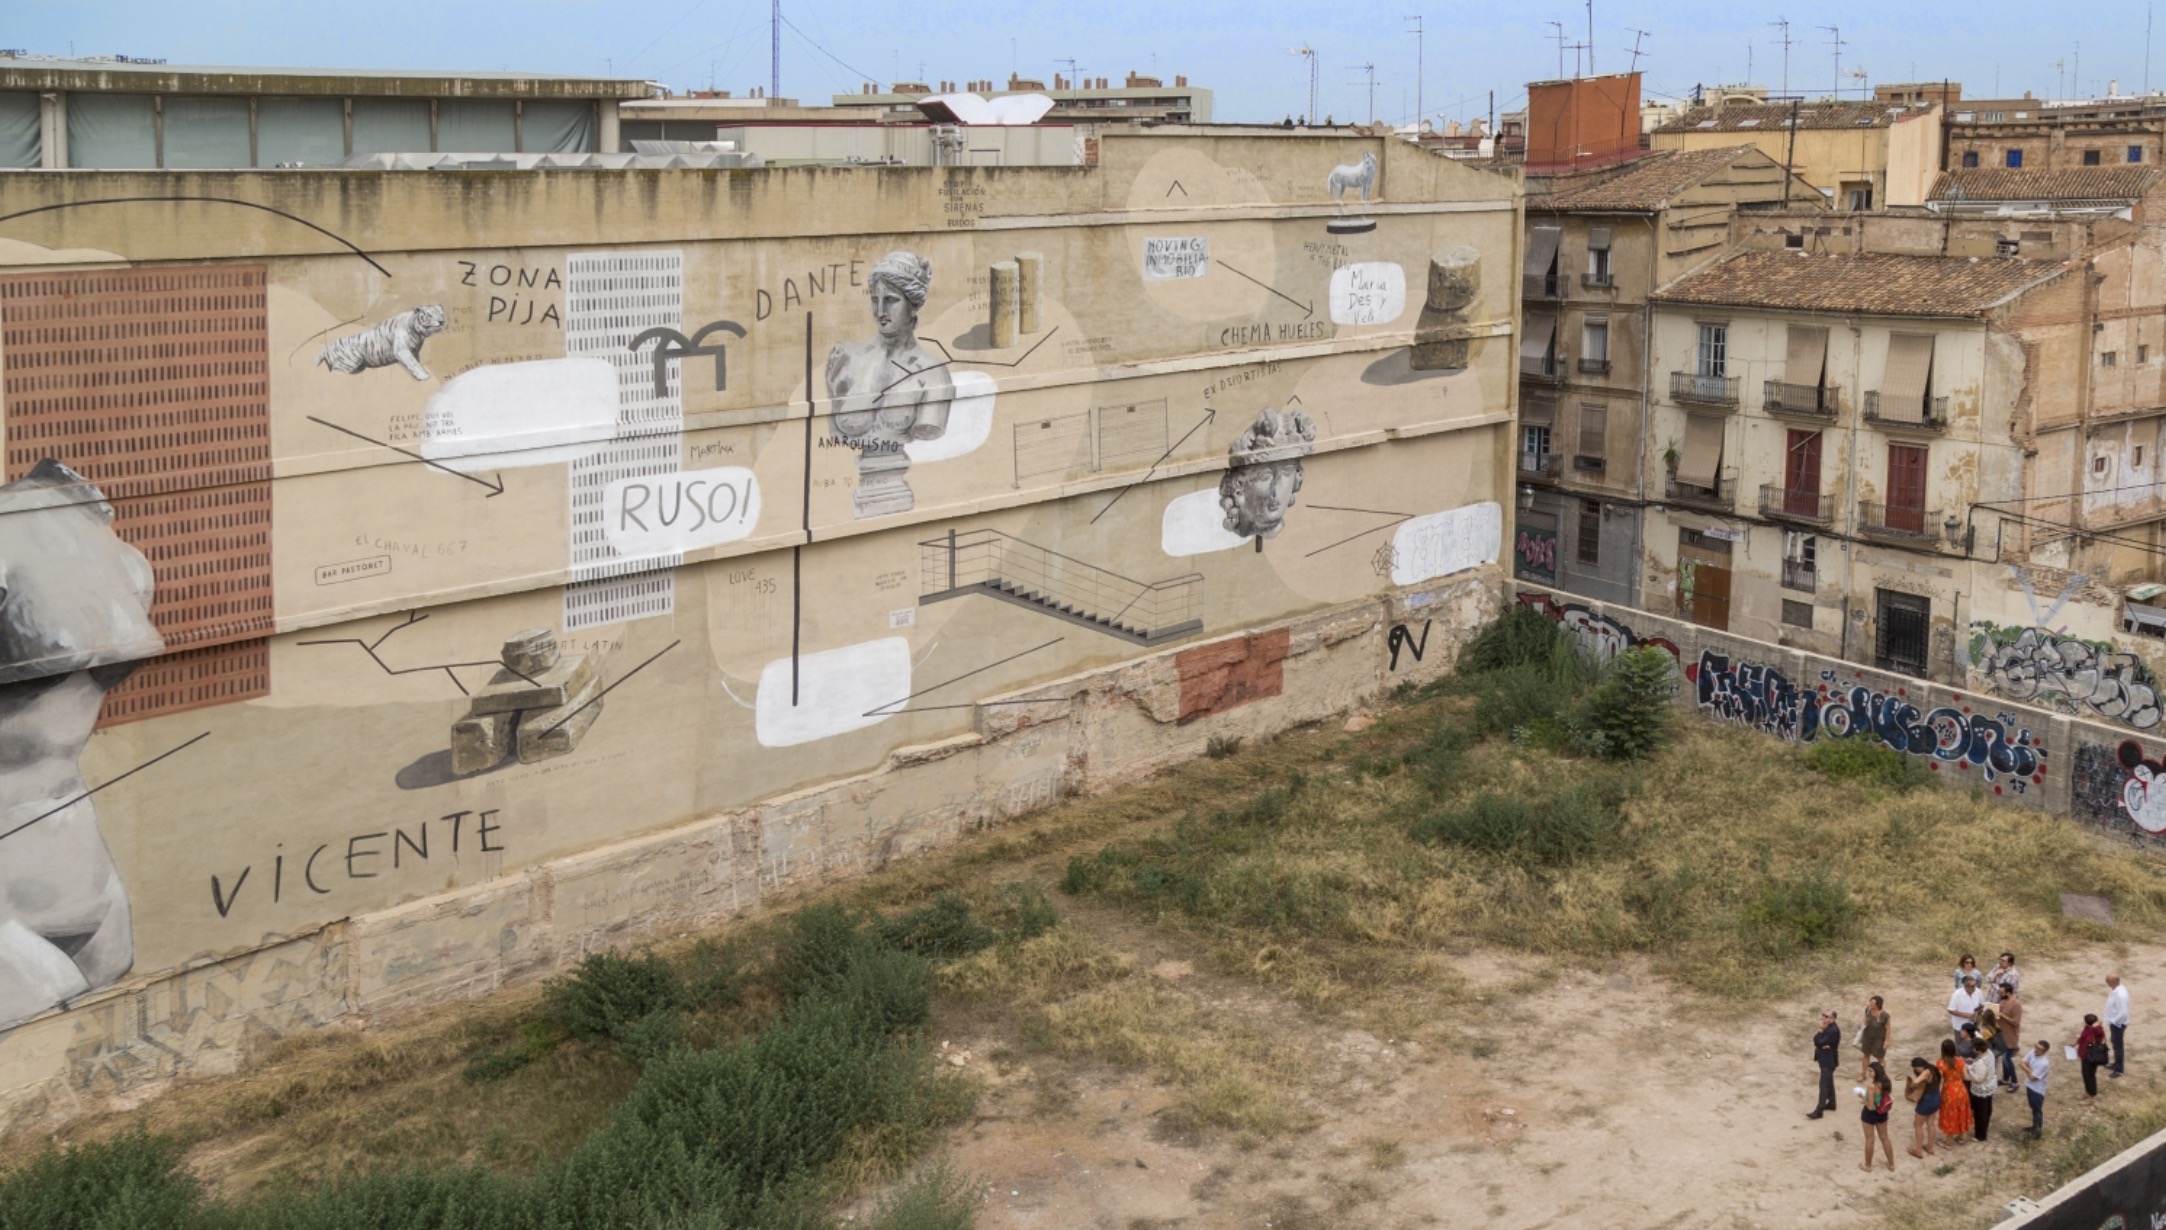 Escif, elegit entre 300 artistes pel gran mural de Sant Feliu de Llobregat